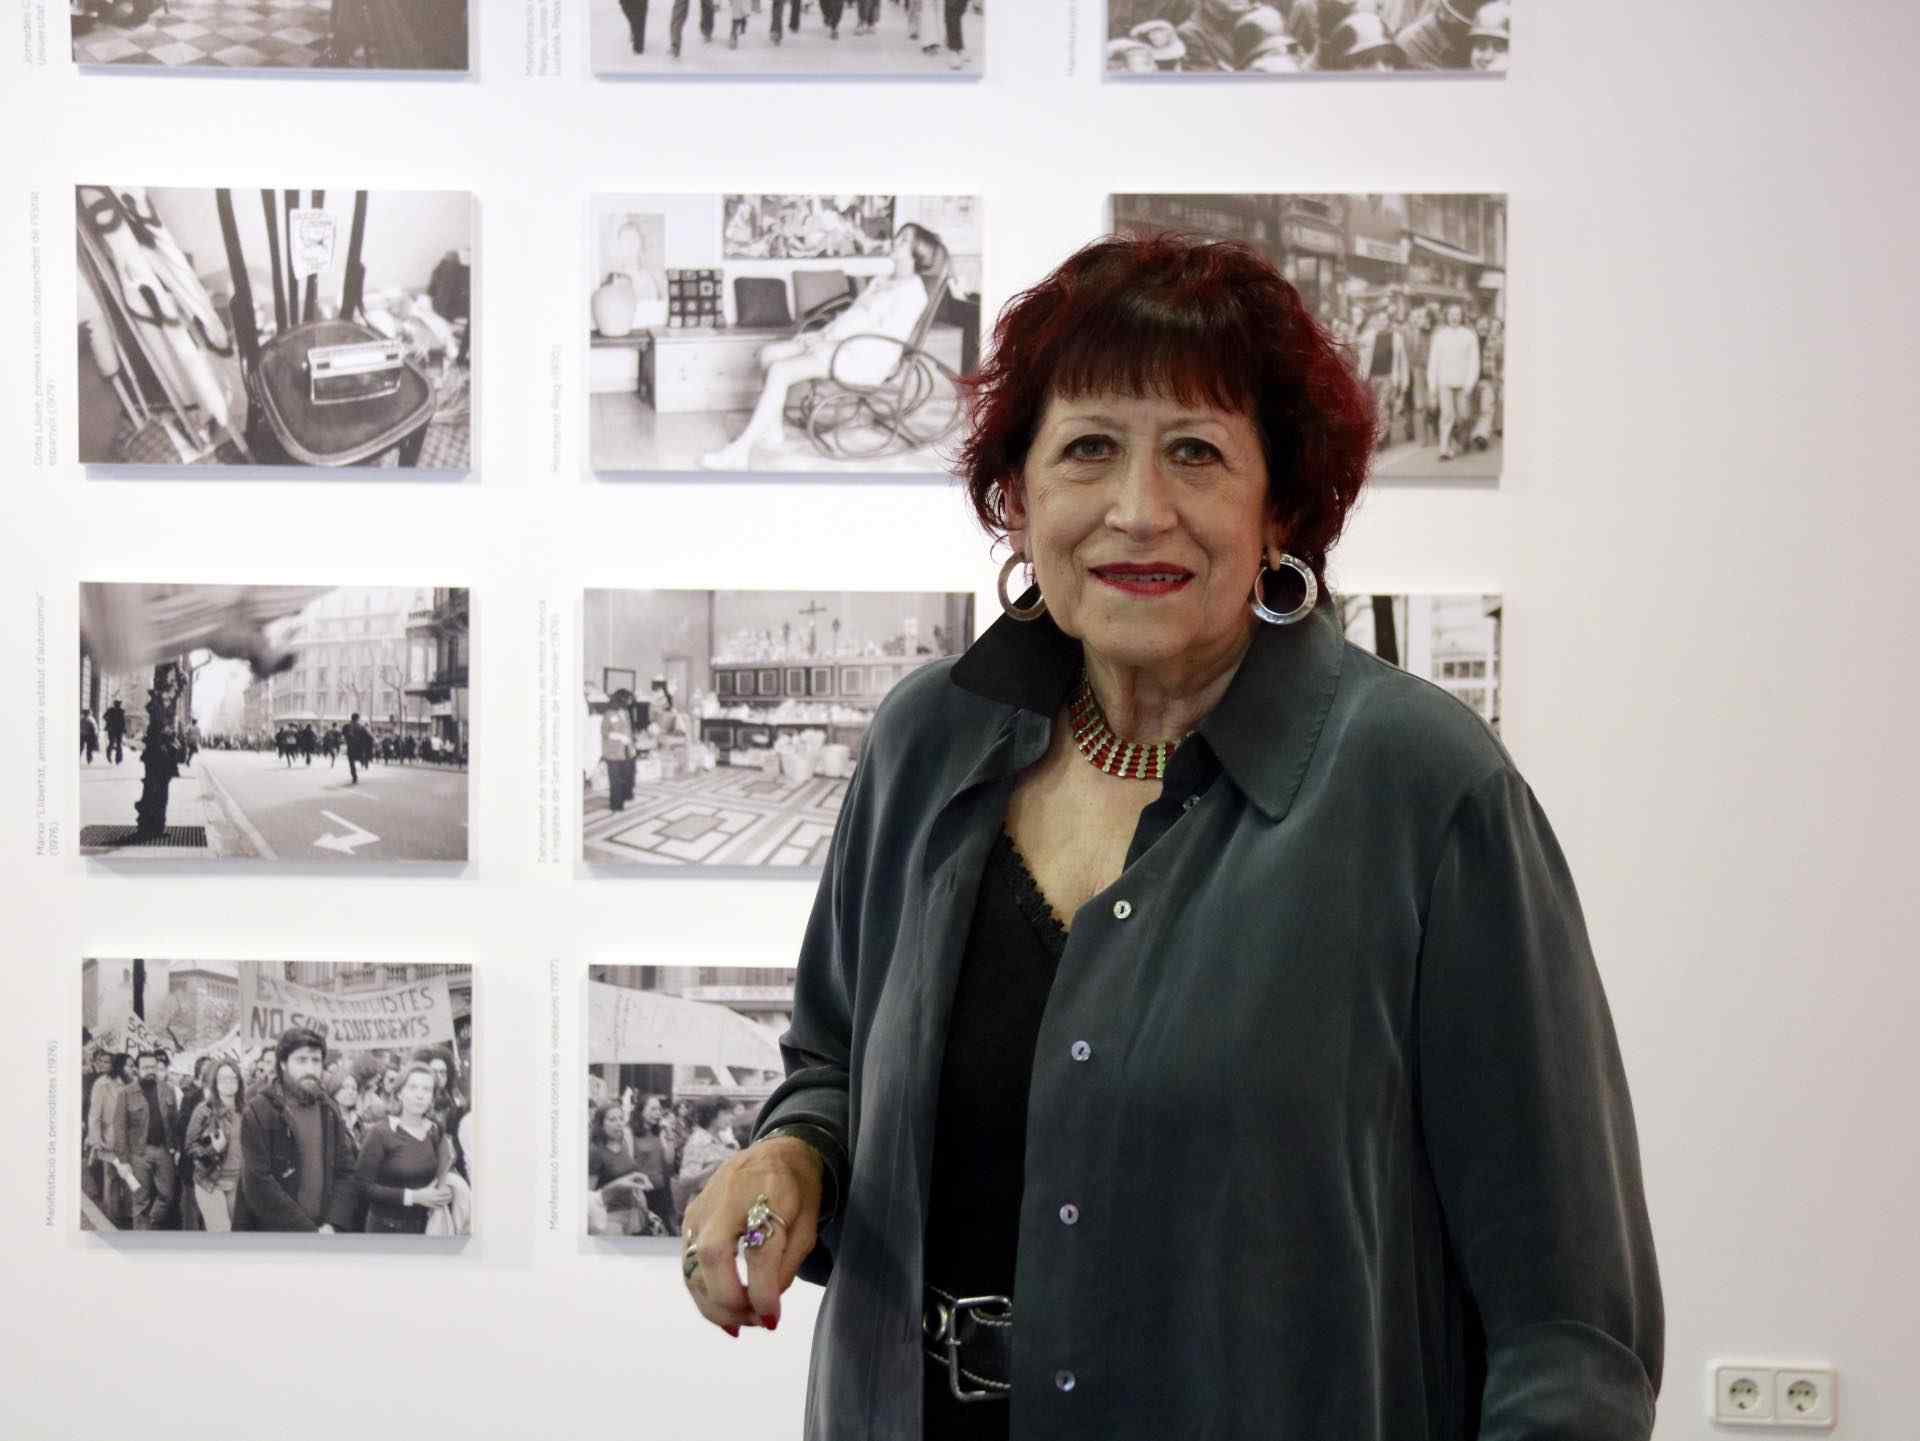 Les memòries fotogràfiques de Pilar Aymerich arriben a les llibreries amb Comanegra